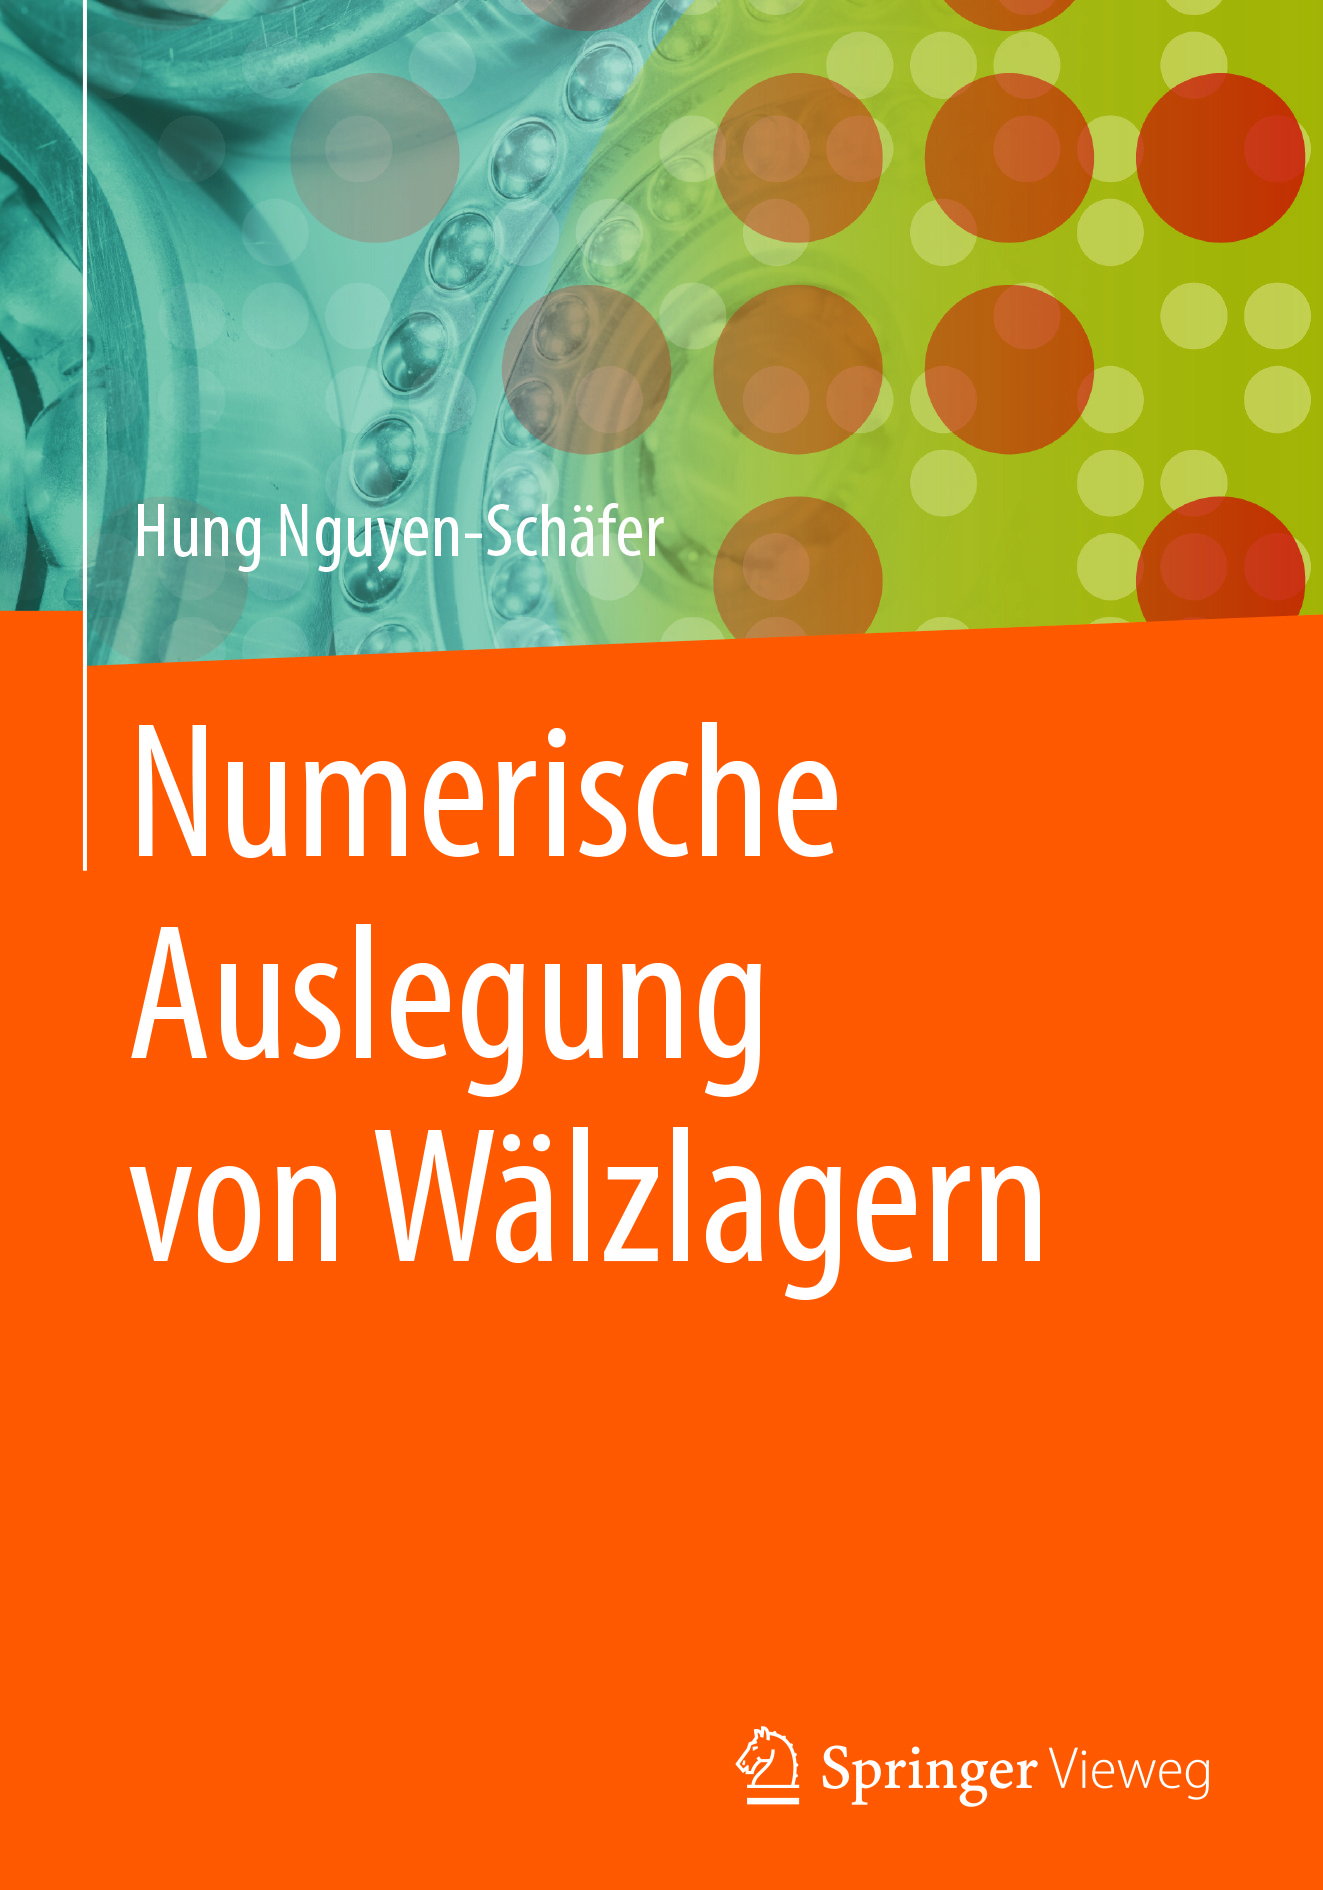 Nguyen-Schäfer, Hung - Numerische Auslegung von Wälzlagern, ebook